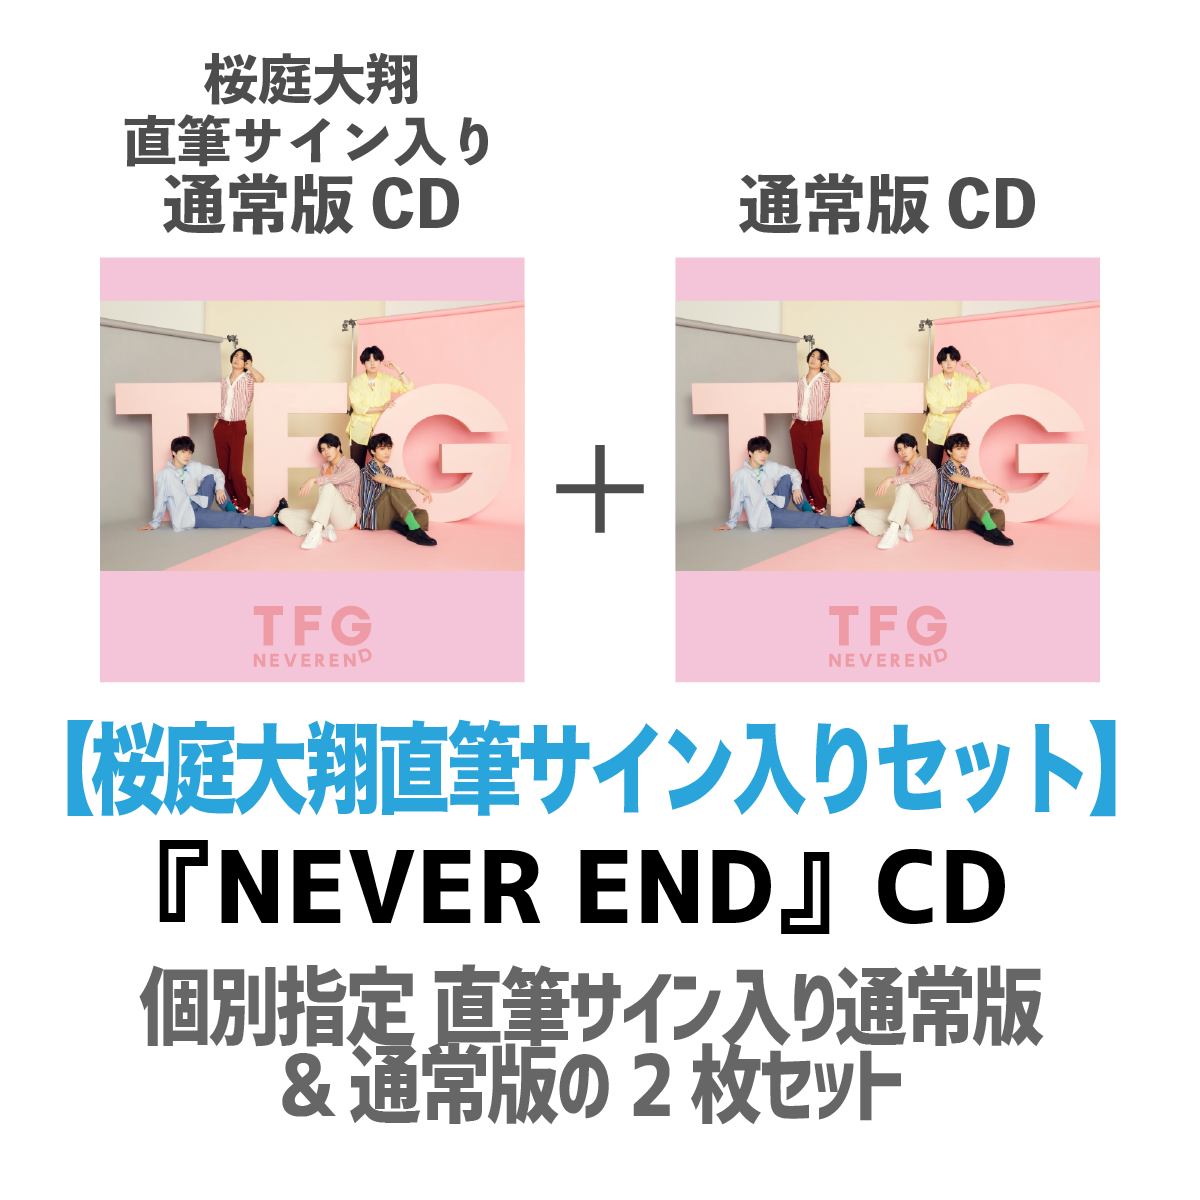 【桜庭大翔直筆サイン入り】TFG『NEVER END』CD2枚セット